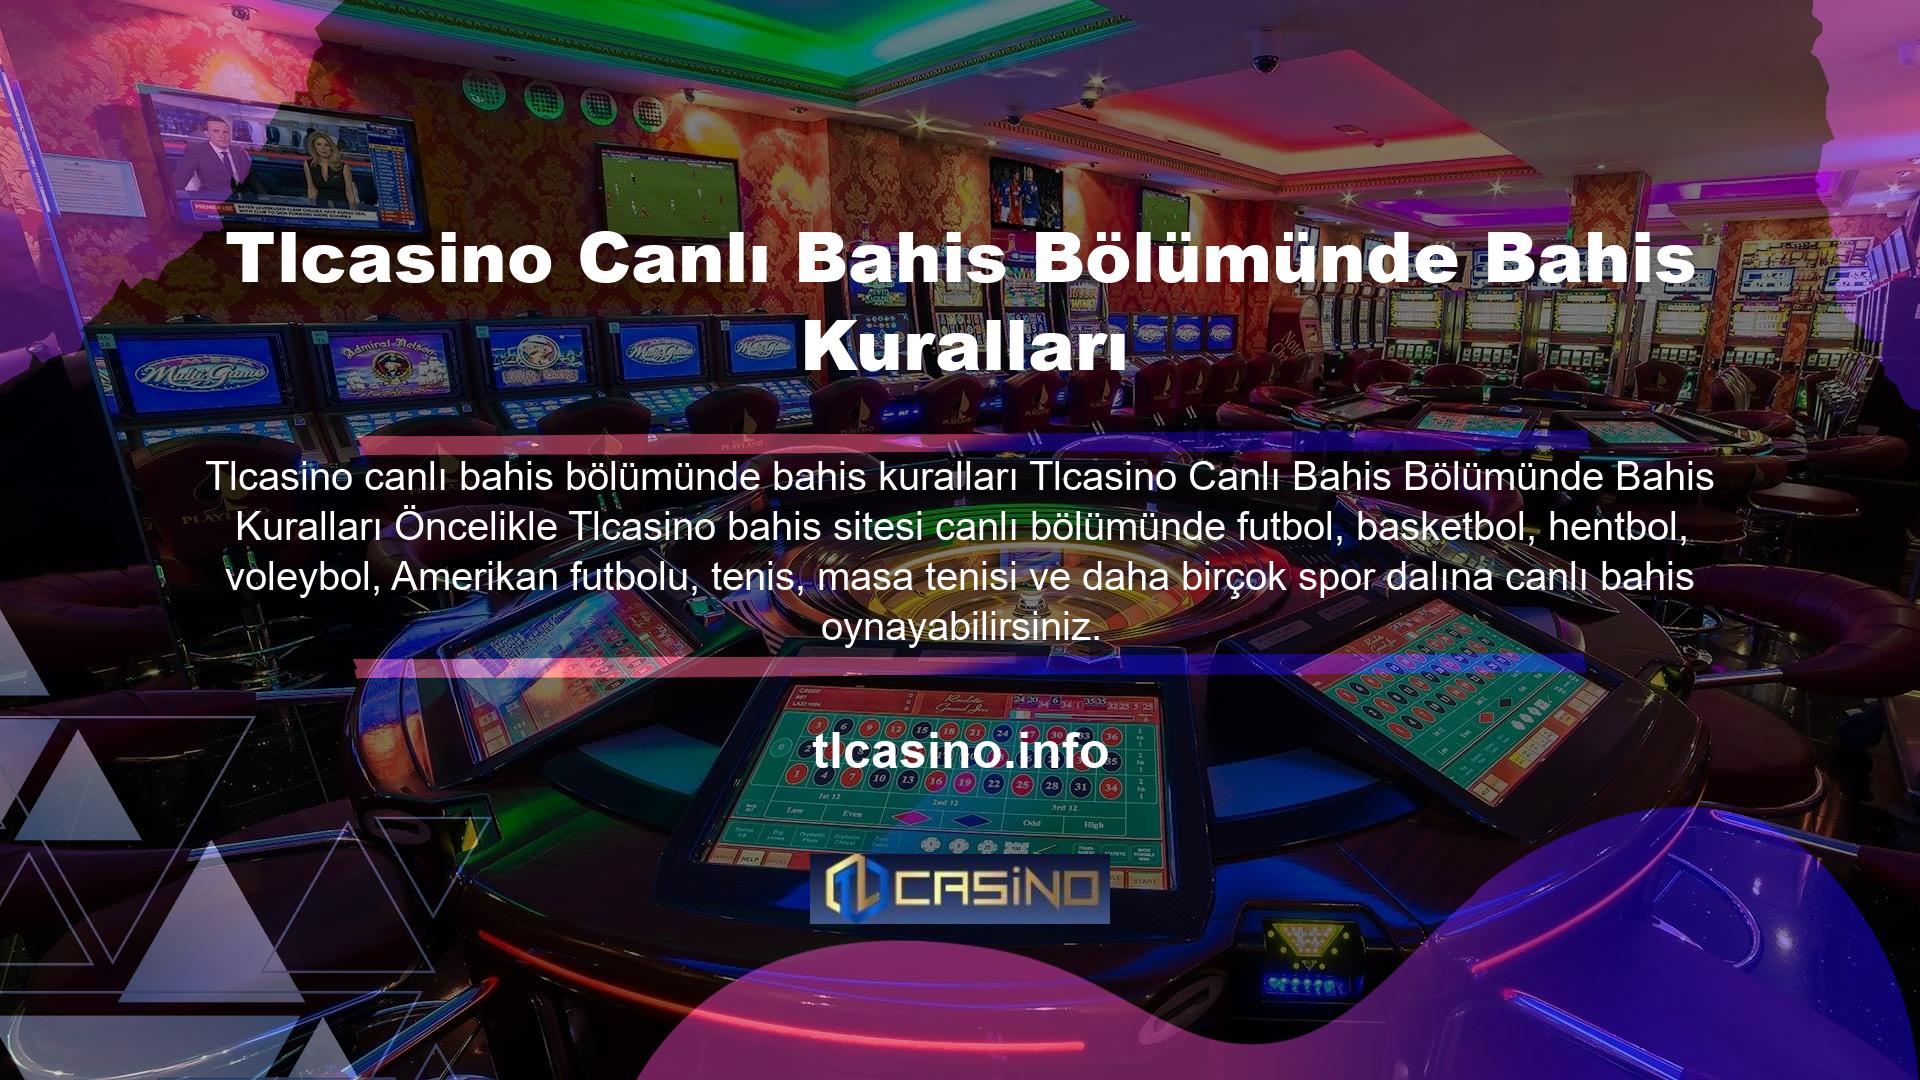 Tlcasino web sitesi Türkiye'deki en geniş canlı ve bahisçi ağına sahiptir ve müşterilerine en iyi oranları garanti eder